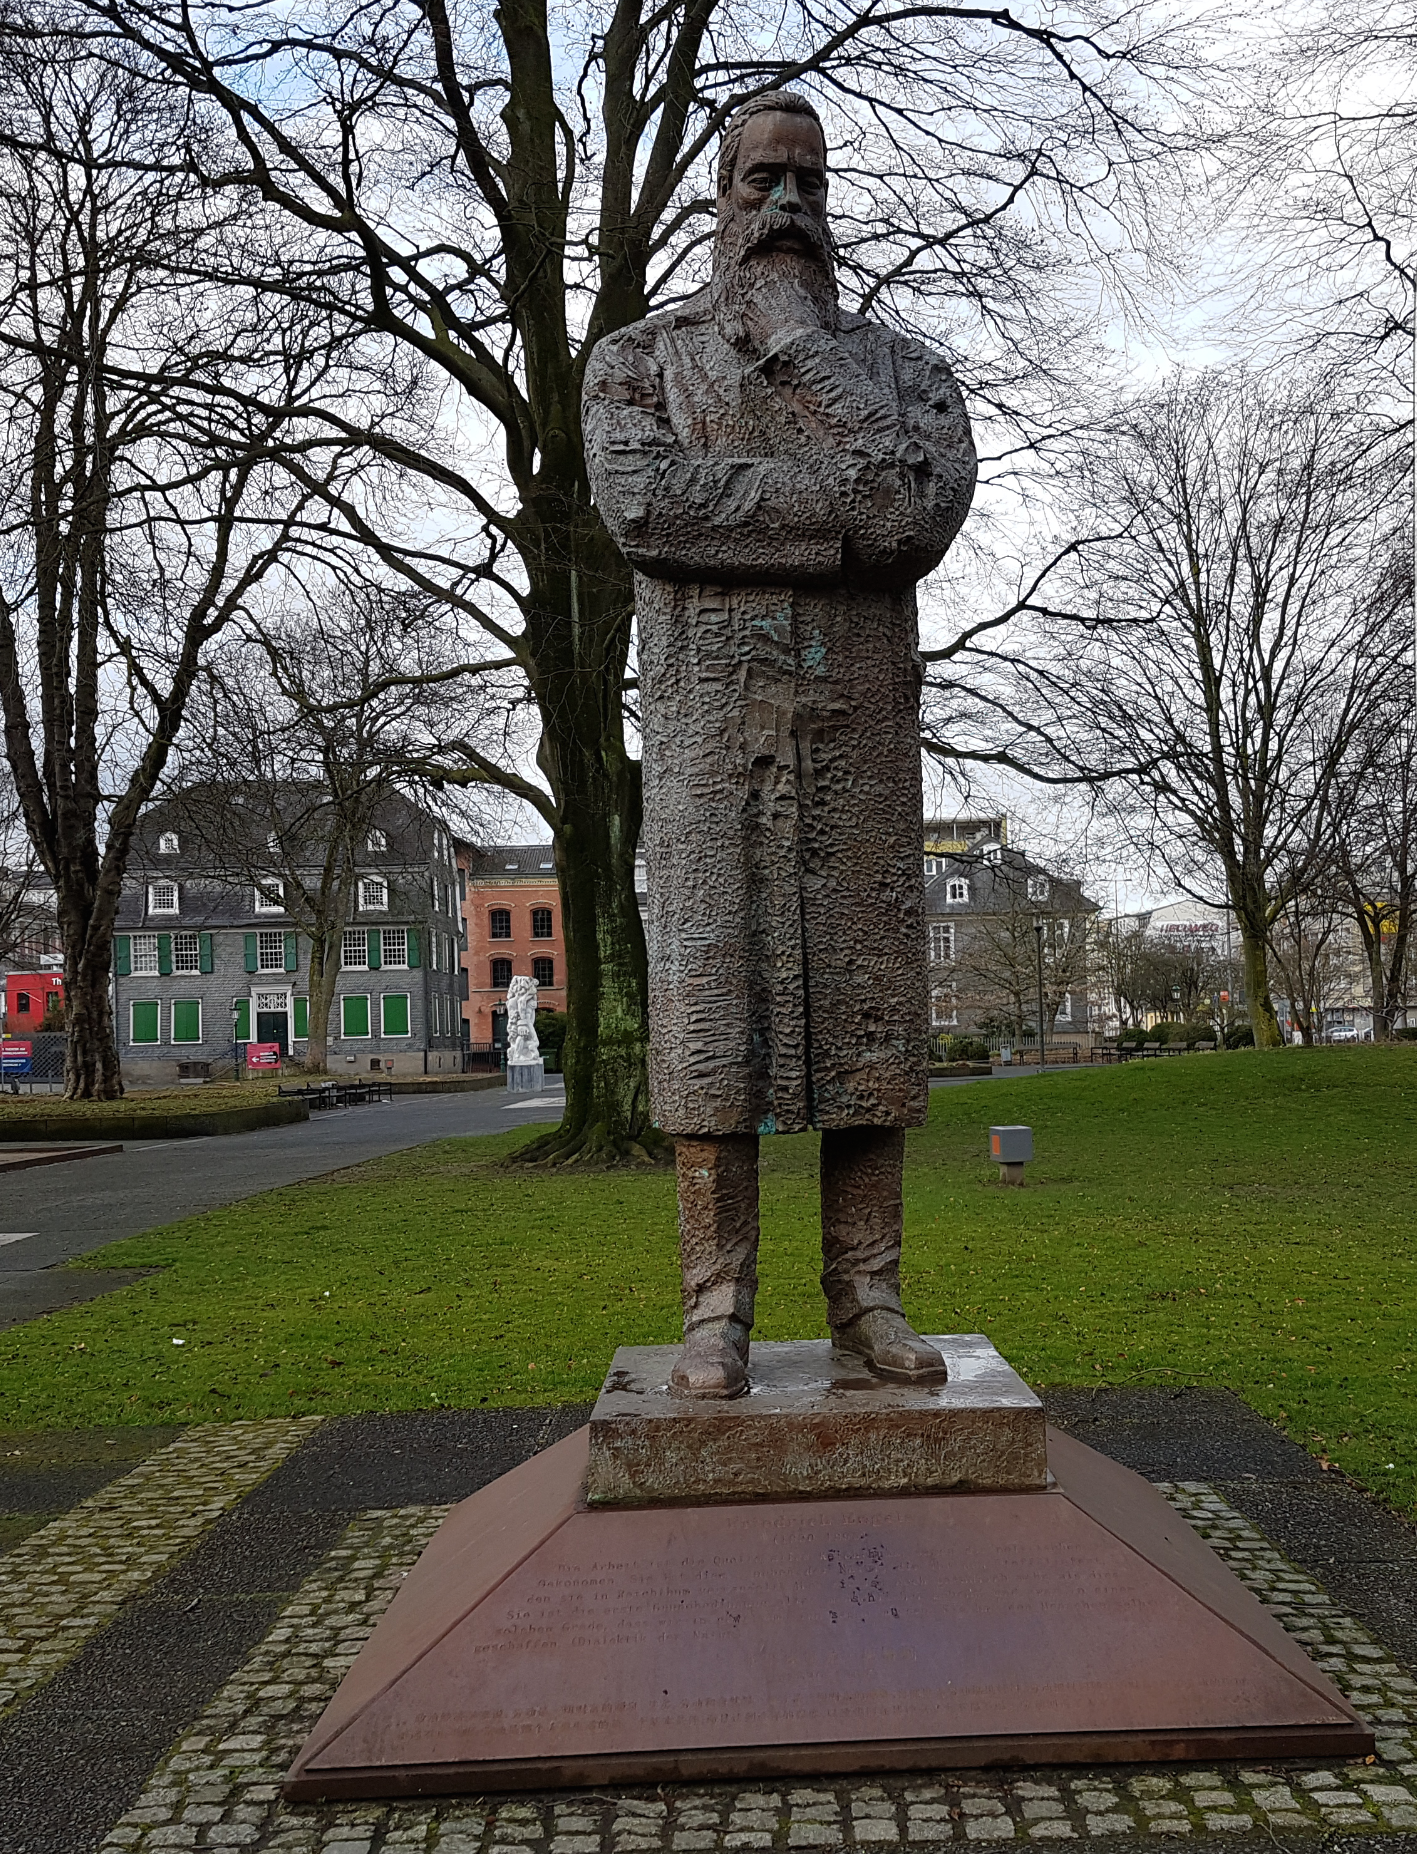 Friedrich Engels im Engels-Park in Wuppertal - Barmen.
Die Statue war ein Geschenk einer chin. Delegation an die Stadt.
Im Hintergrund das Engelshaus-